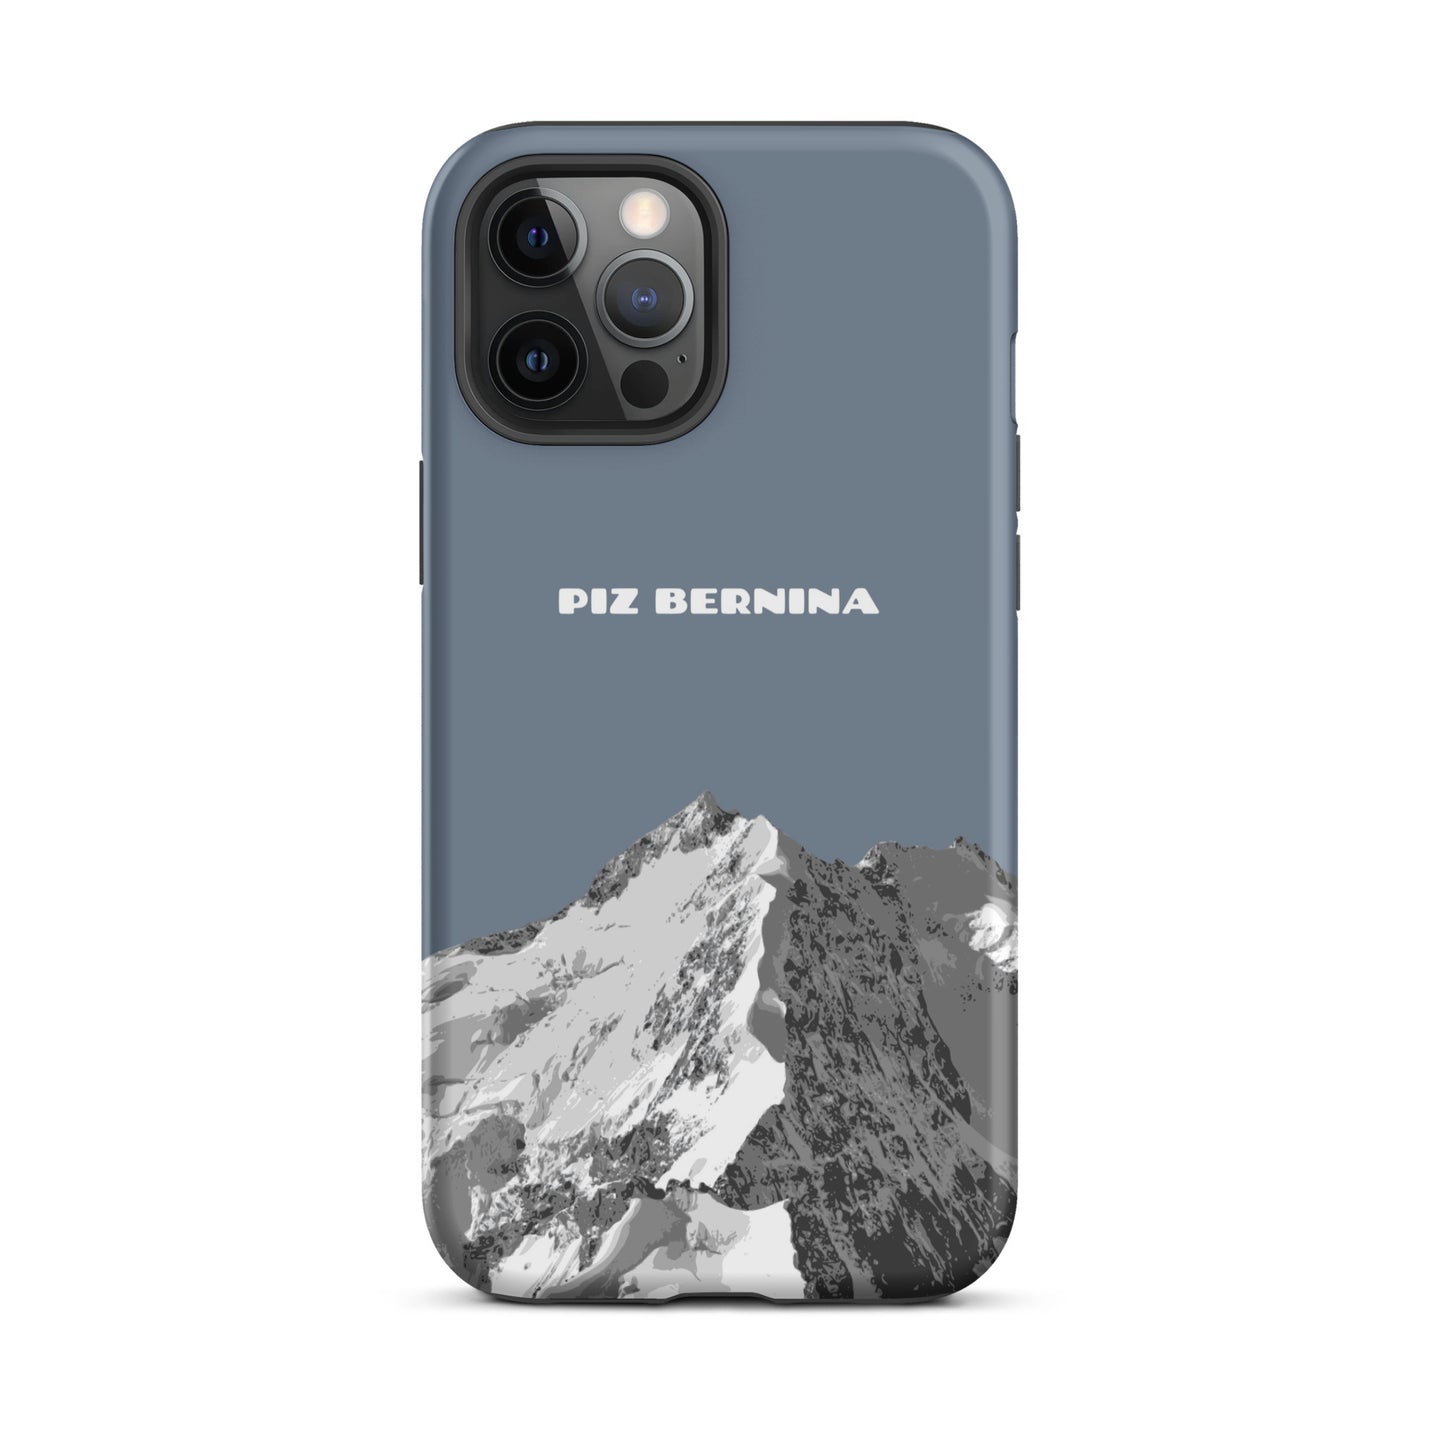 Hülle für das iPhone 12 Pro Max von Apple in der Farbe Schiefergrau, dass den Piz Bernina in Graubünden zeigt.